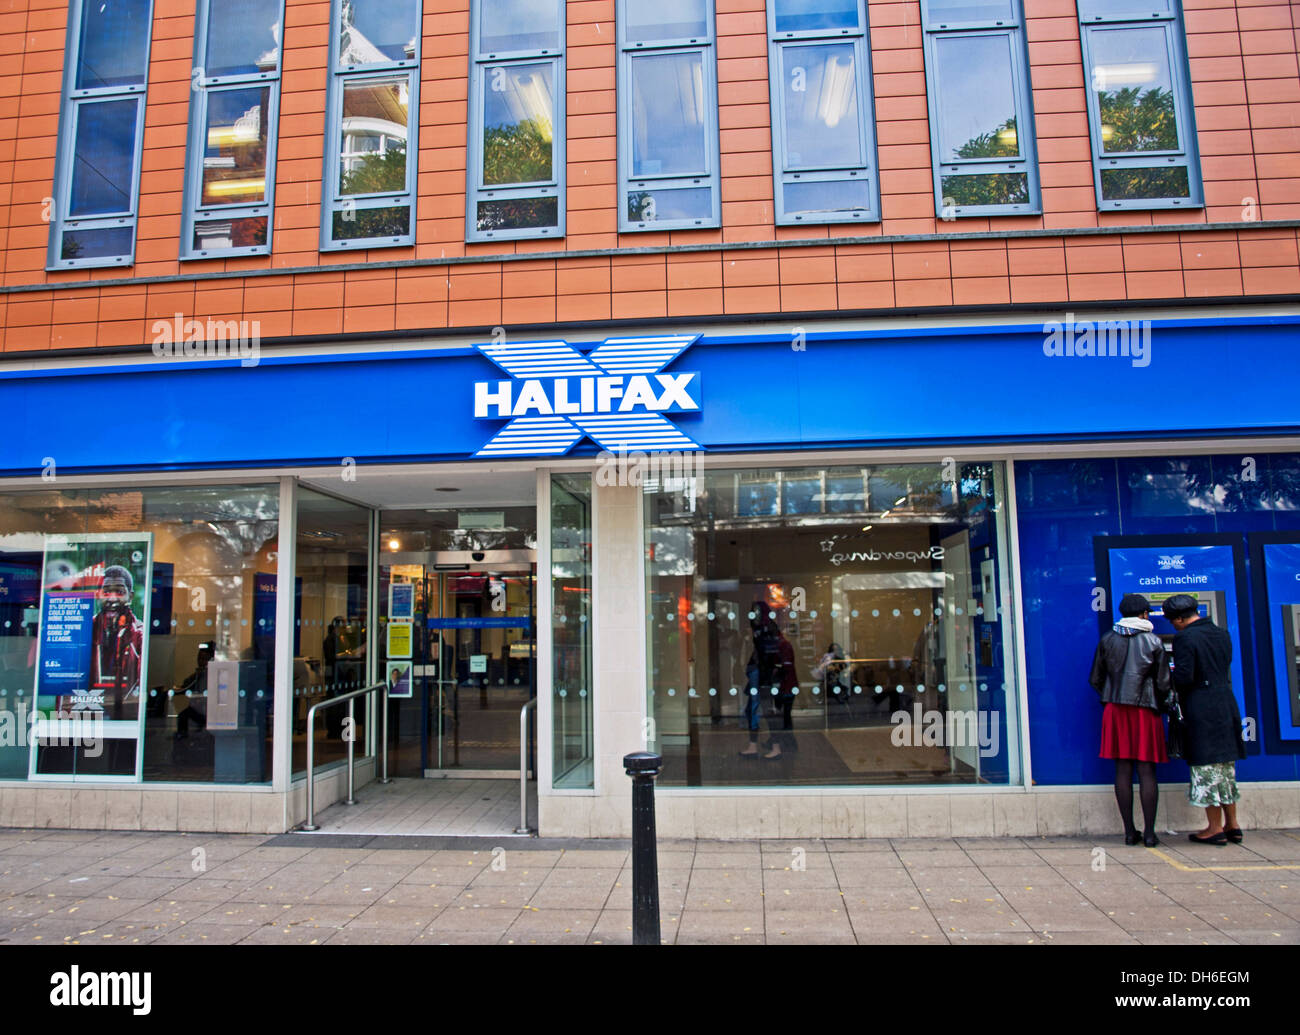 Le centre-ville de Halifax, Woolwich, Londres, Angleterre, Royaume-Uni Banque D'Images